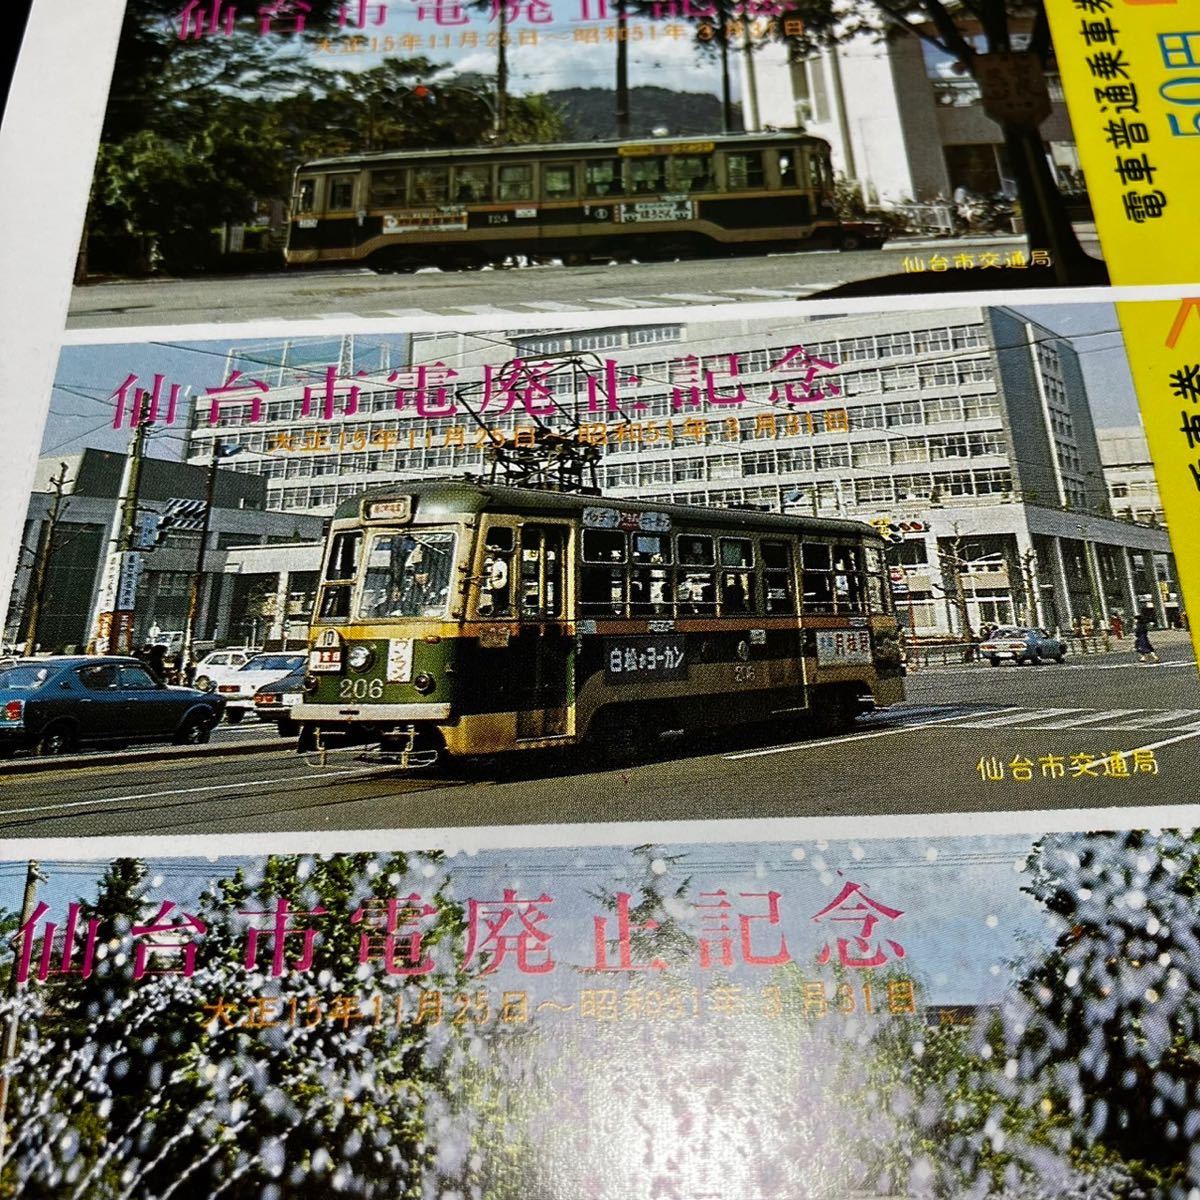 【当時物】仙台市電廃止記念 記念乗車券 チンチン電車 未使用_画像8